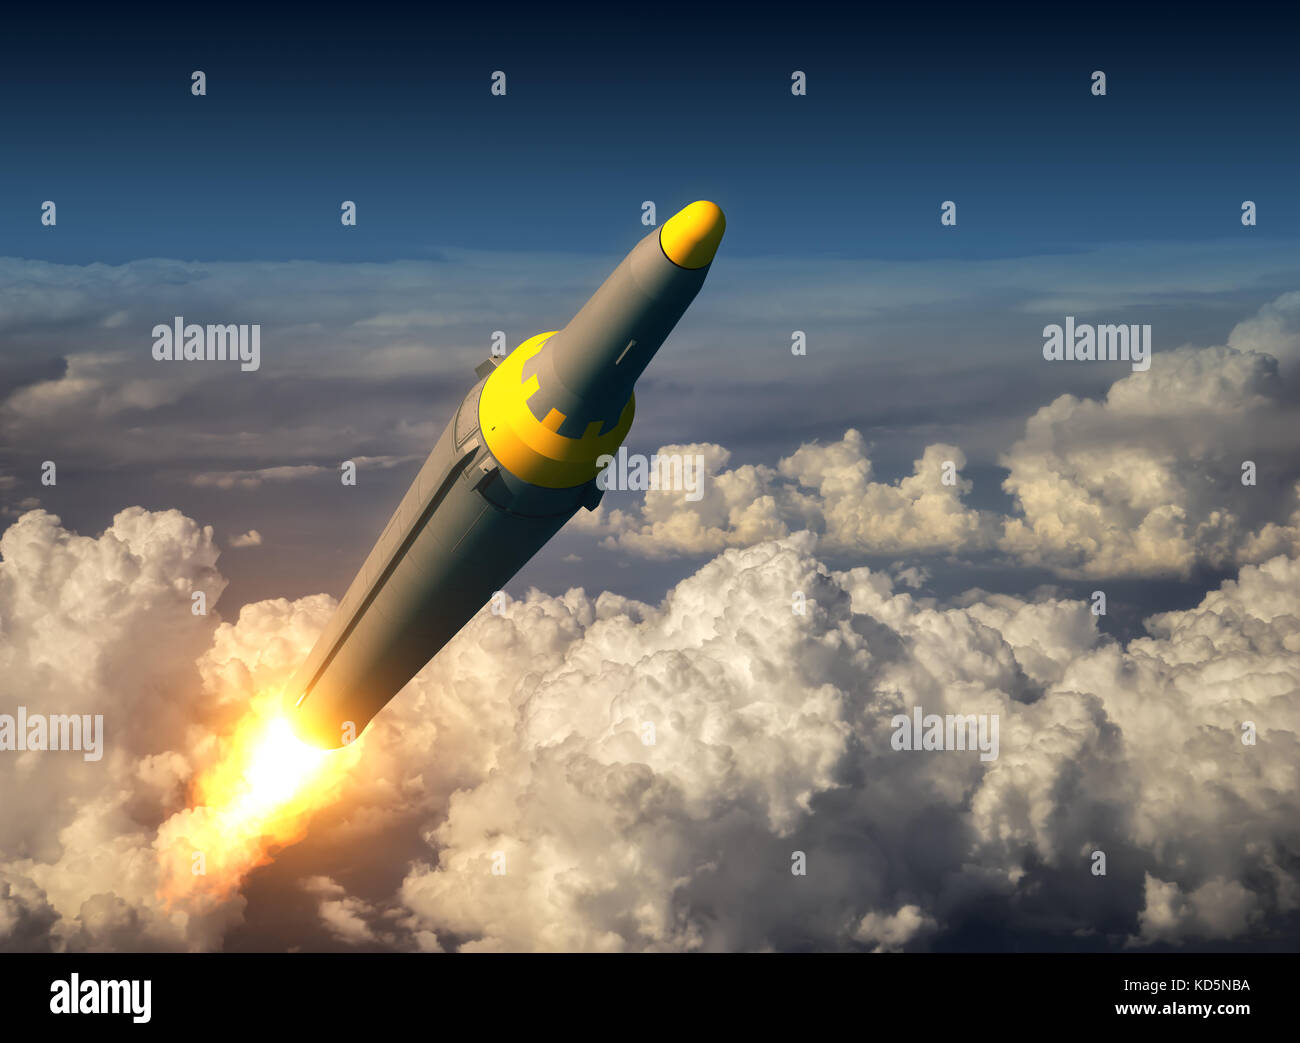 Nordkoreanischen ballistischen Rakete über den Wolken Stockfoto